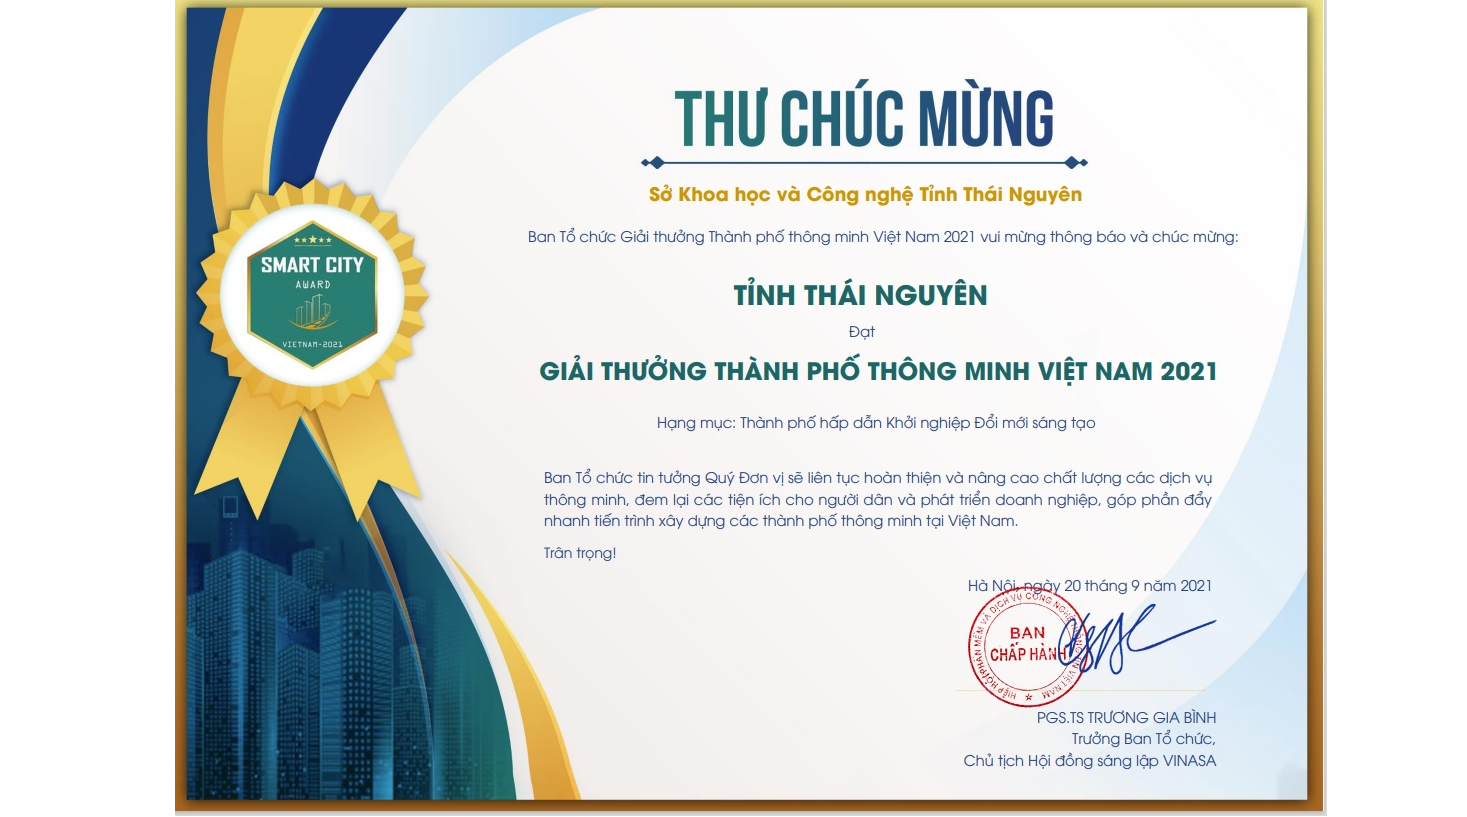 Tỉnh Thái Nguyên đạt Giải thưởng Thành phố thông minh Việt Nam 2021